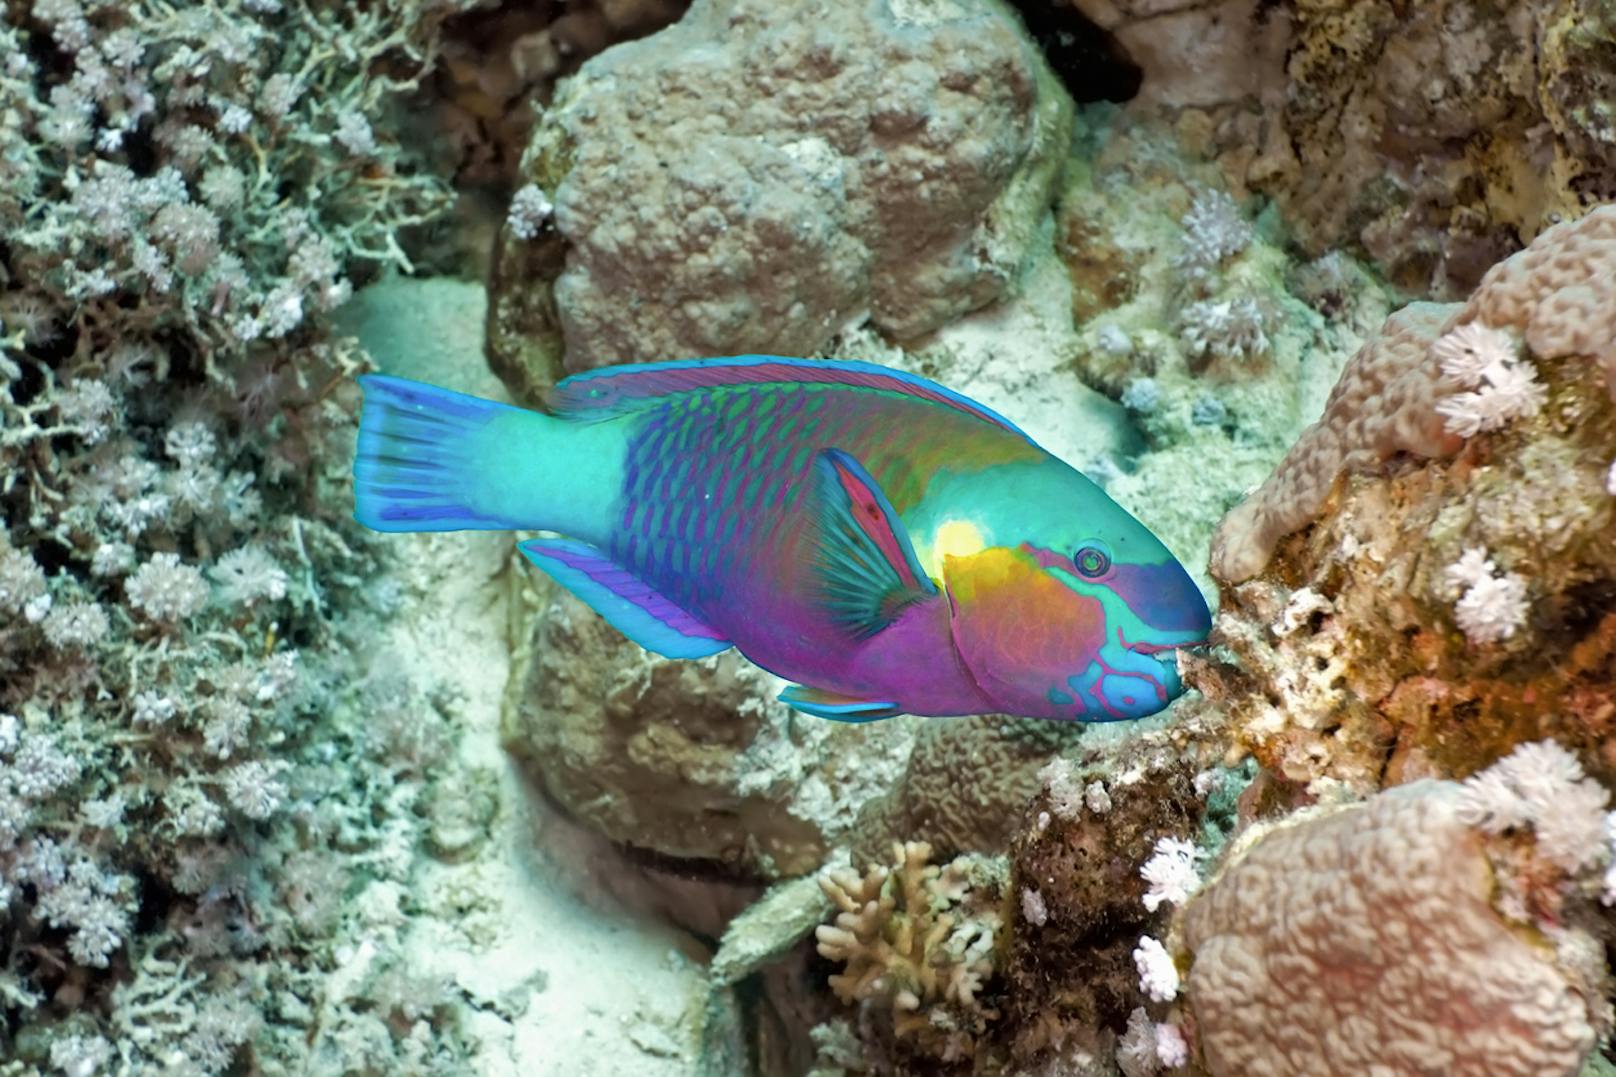 Das ist ein <strong>Papageifisch</strong>, auch Seepapagei genannt. Er gehört zur Familie der Lippfische und ist einer der buntesten Fische der tropischen Meere. Seinen Namen verdankt der Papageifisch nicht seinem buntem Aussehen, sondern seinem schnabelförmigen Mund. 